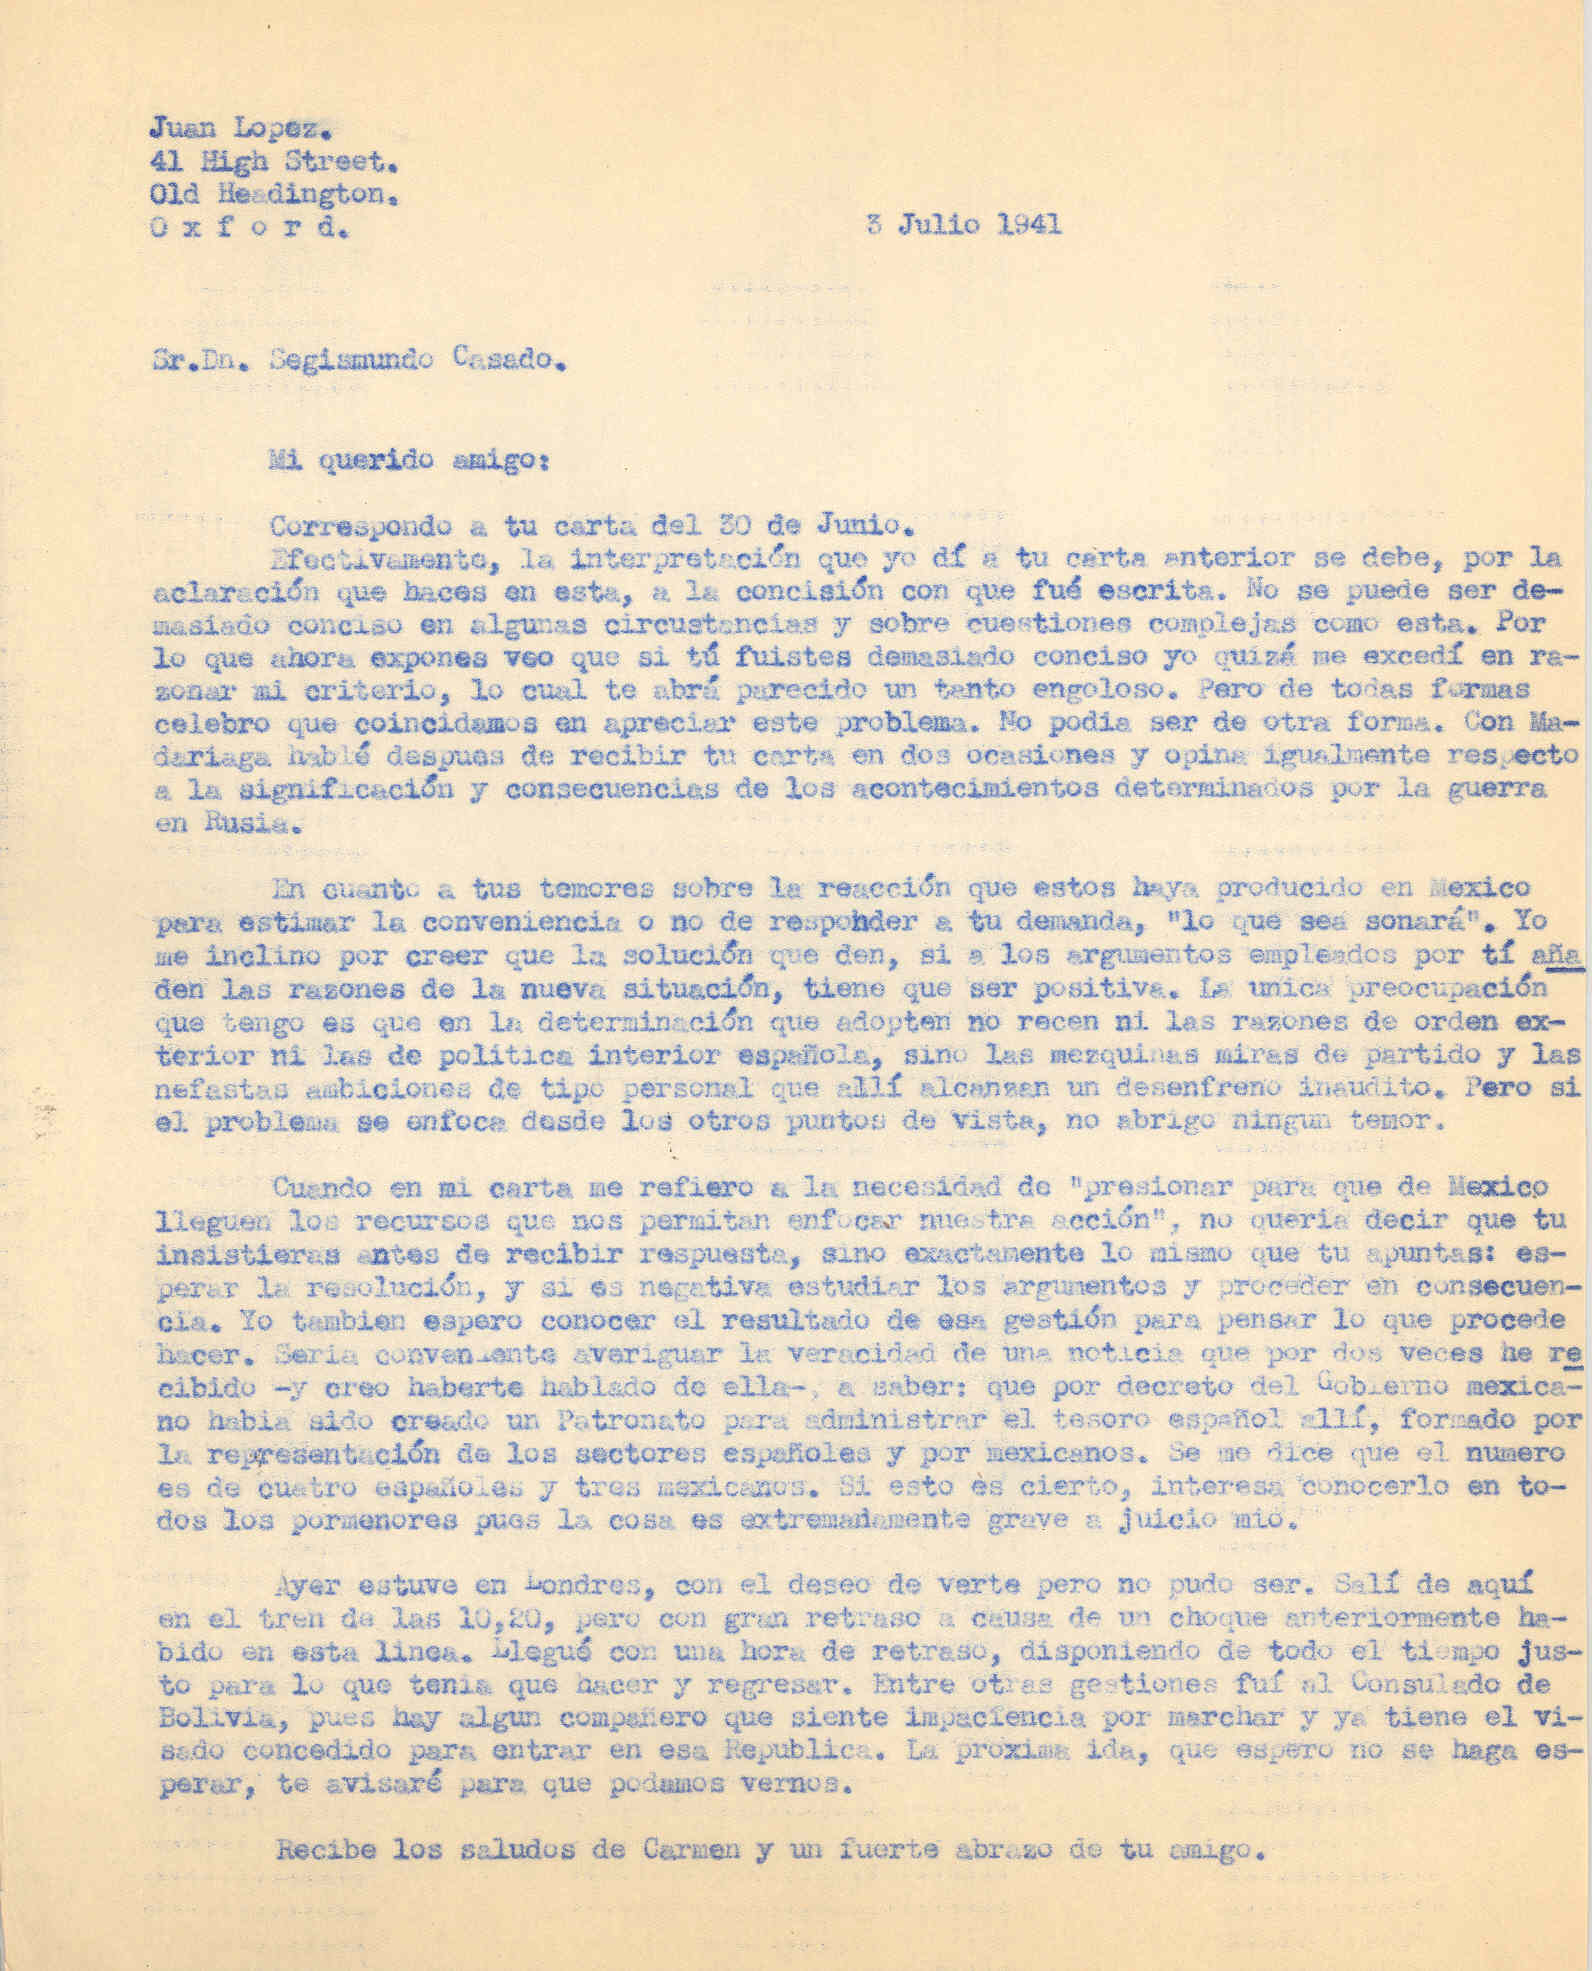 Carta a Segismundo Casado en la que cuenta noticias de México, como la creación de un Patronato para administrar el tesoro español allí, formado por españoles y méxicanos.